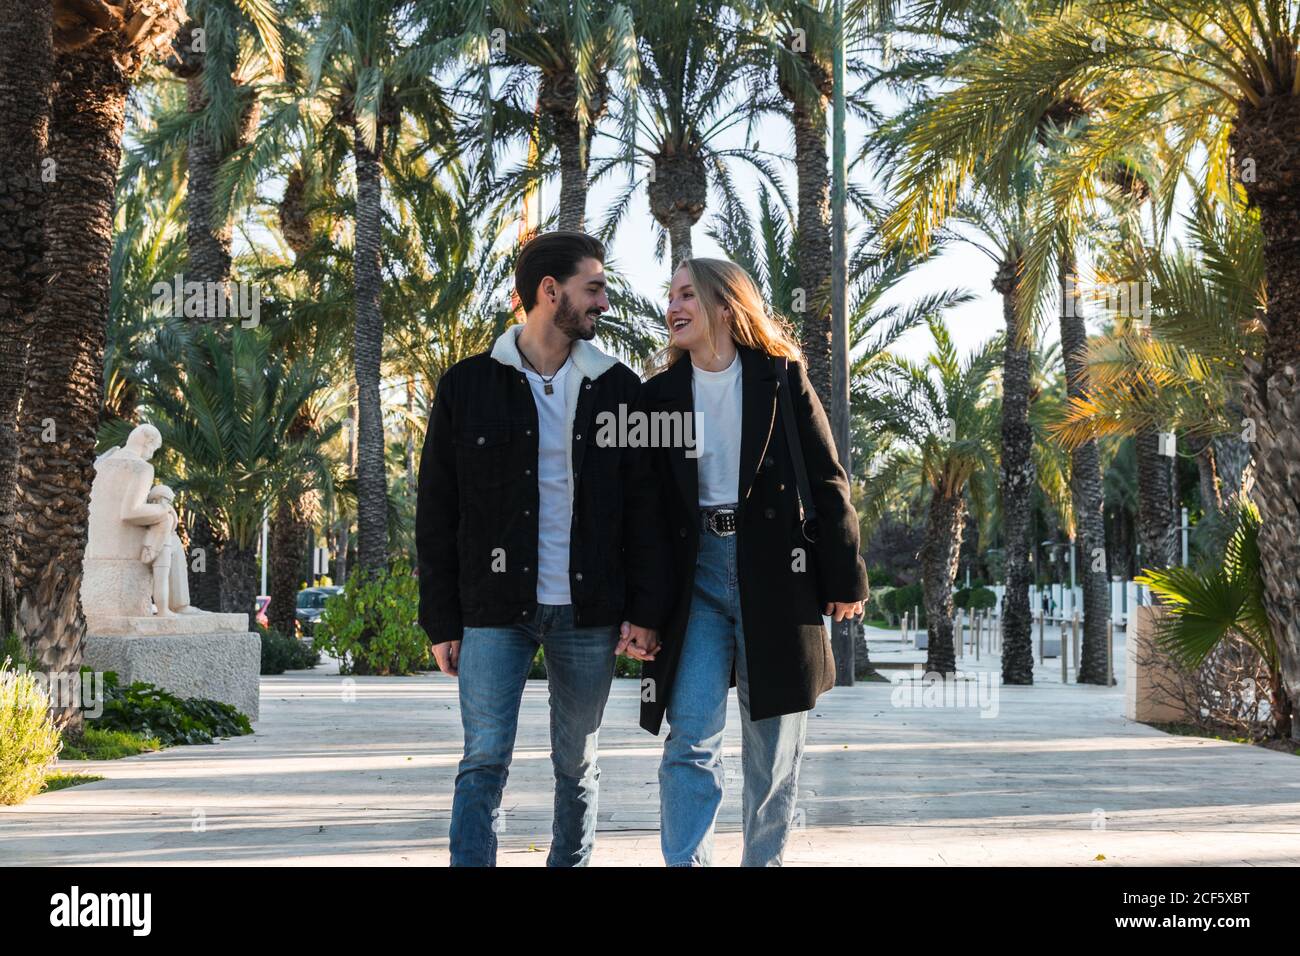 Alegre joven pareja romántica en jeans y chaquetas de moda negro caminar  por el callejón en el parque con palmeras tropicales y disfrutar vacaciones  juntos en un día soleado Fotografía de stock -